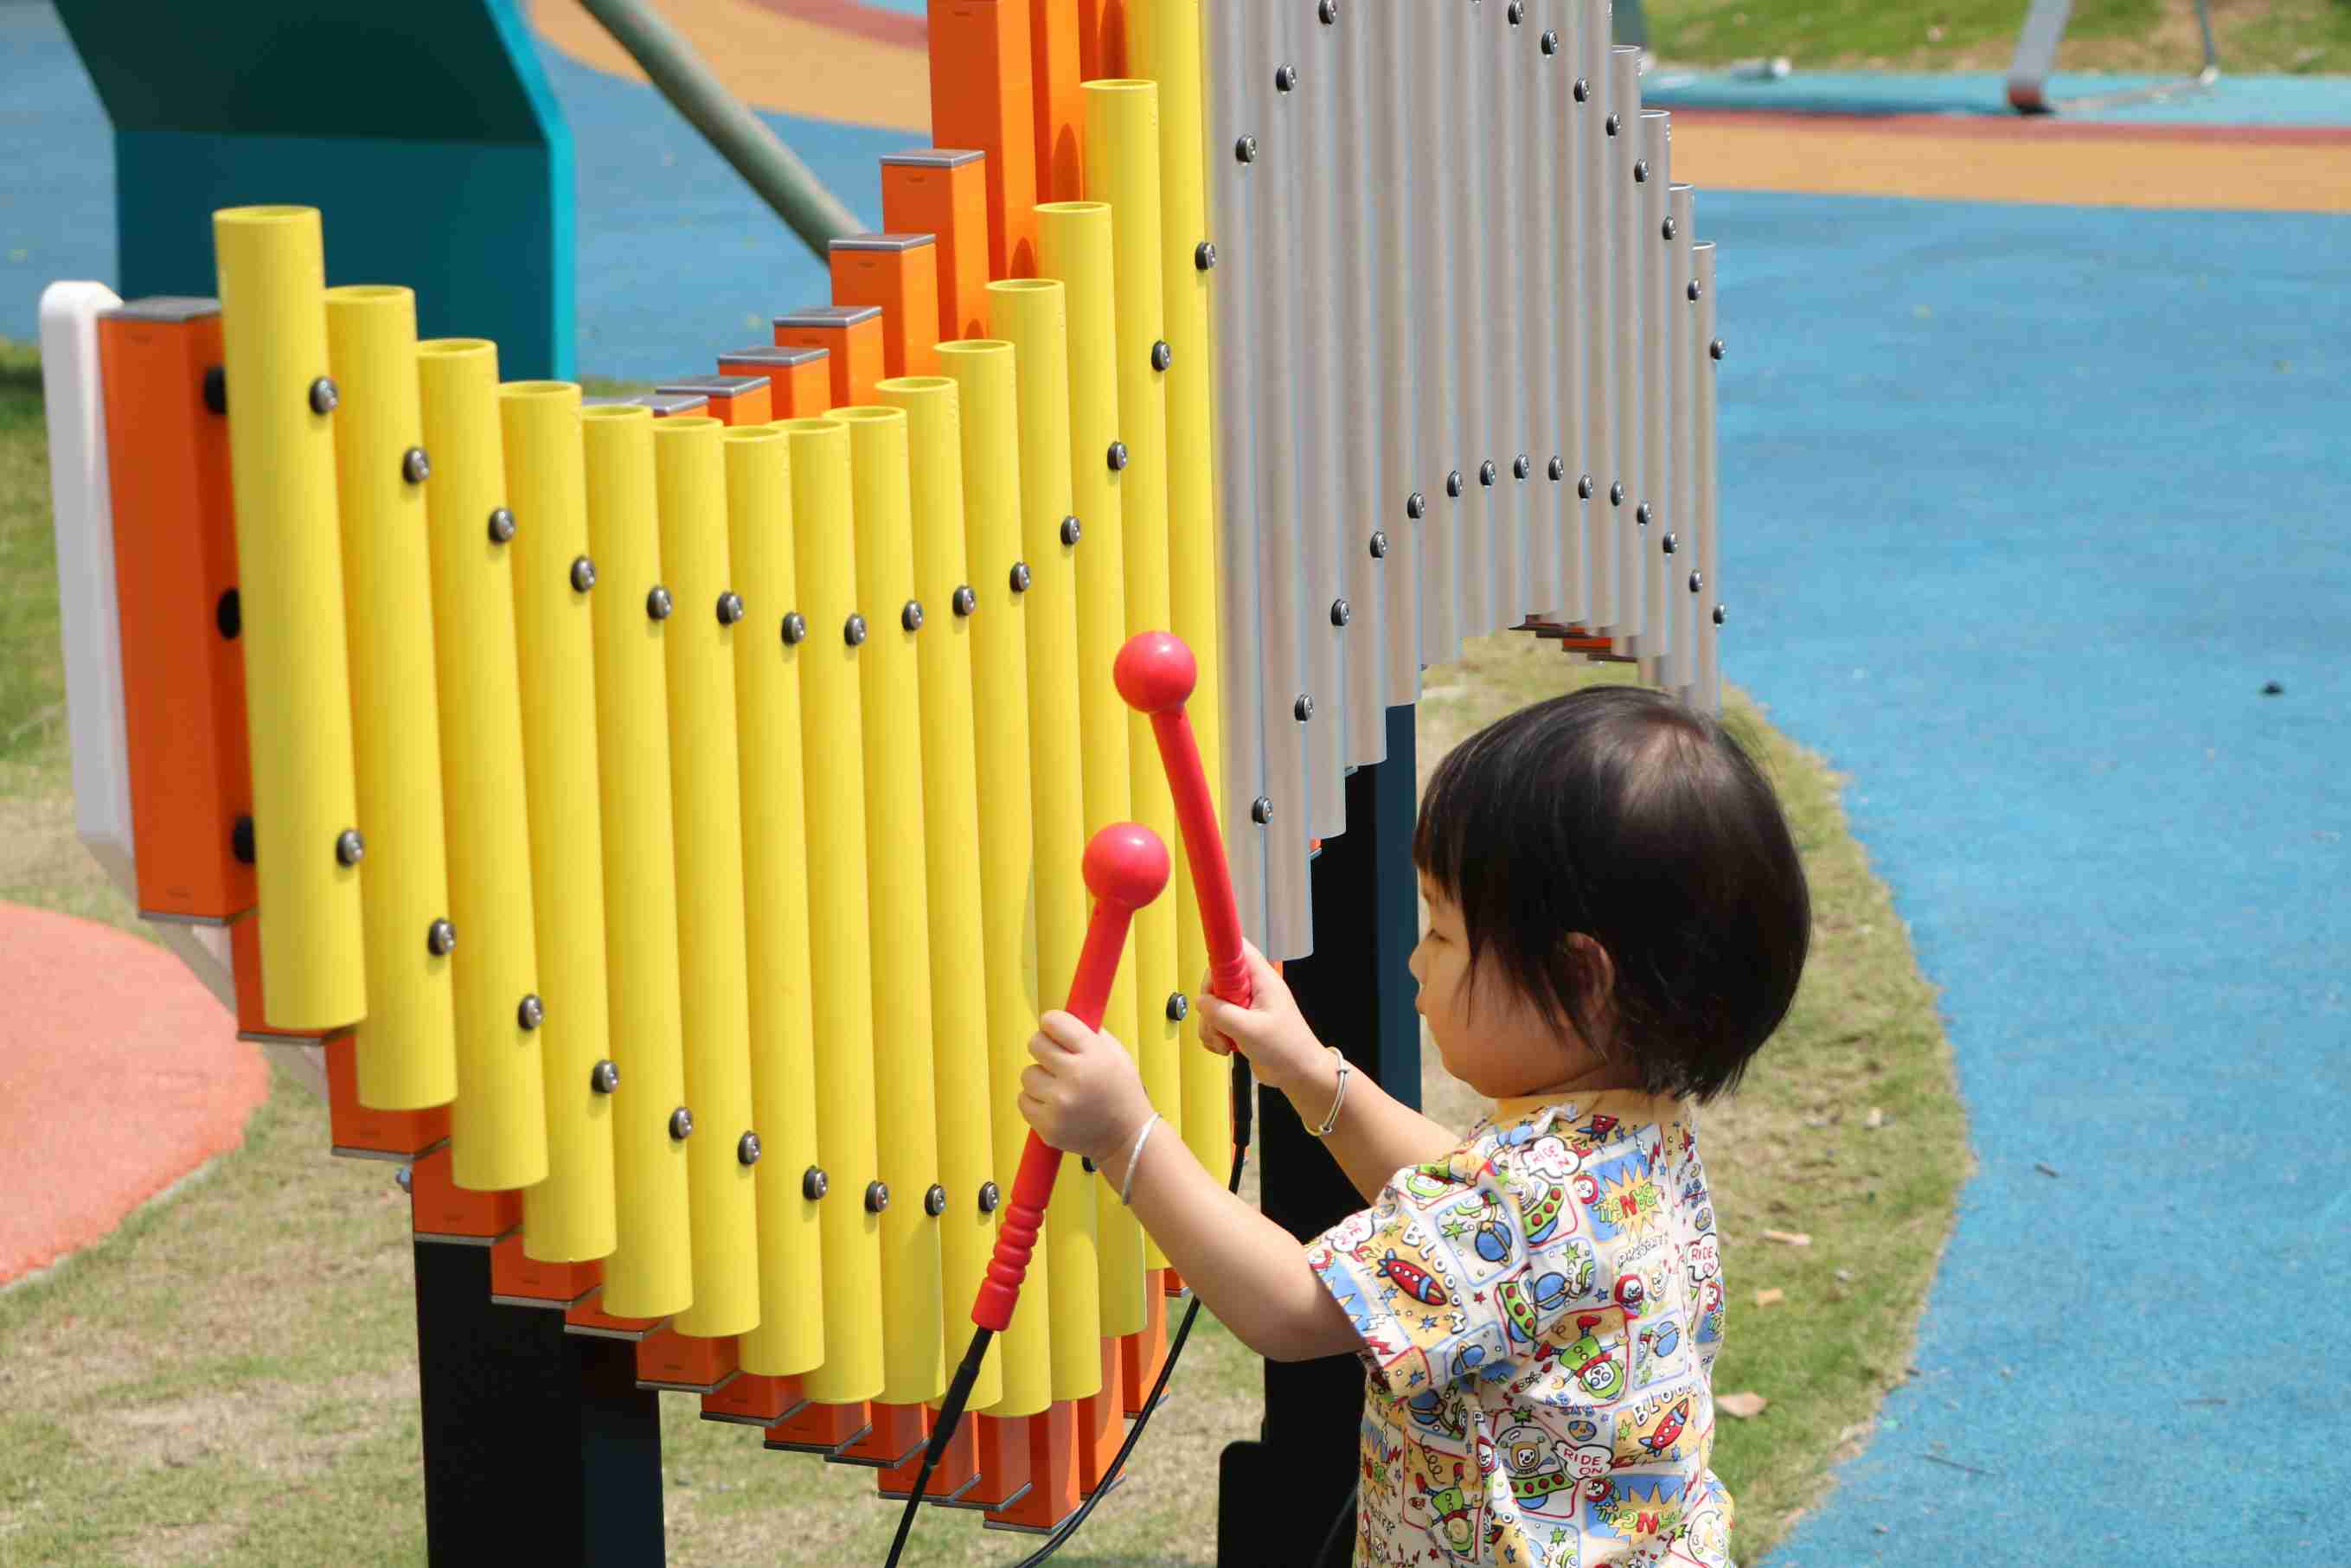 تنسيق تشغيل الموسيقى التعليمية | سيمفونية الفرح في حدائق اللعب